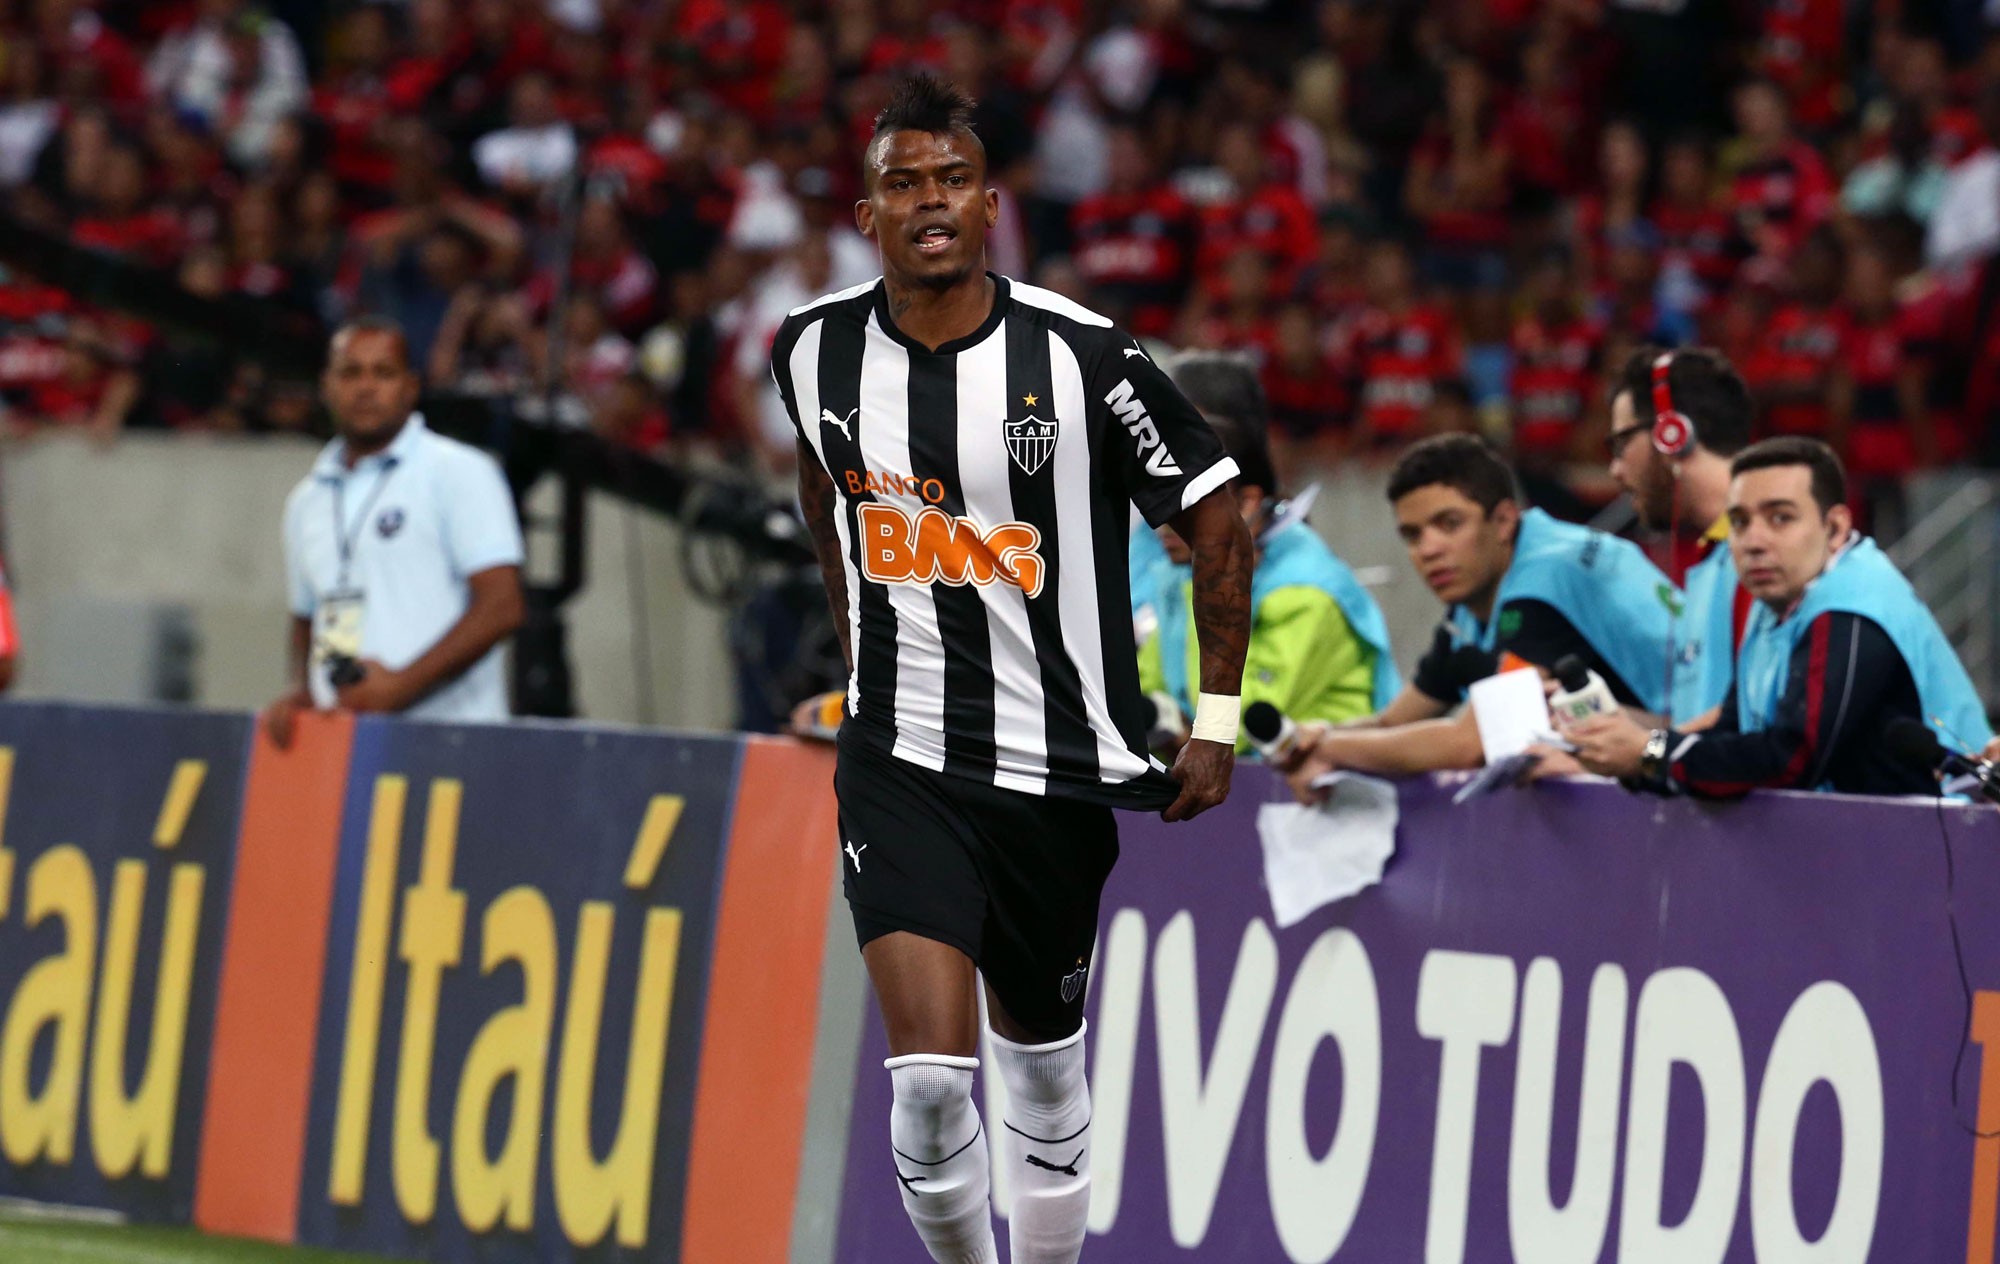 Apostas da Rodada #17: Maicosuel (Atlético Mineiro) | Cartola FC 2016